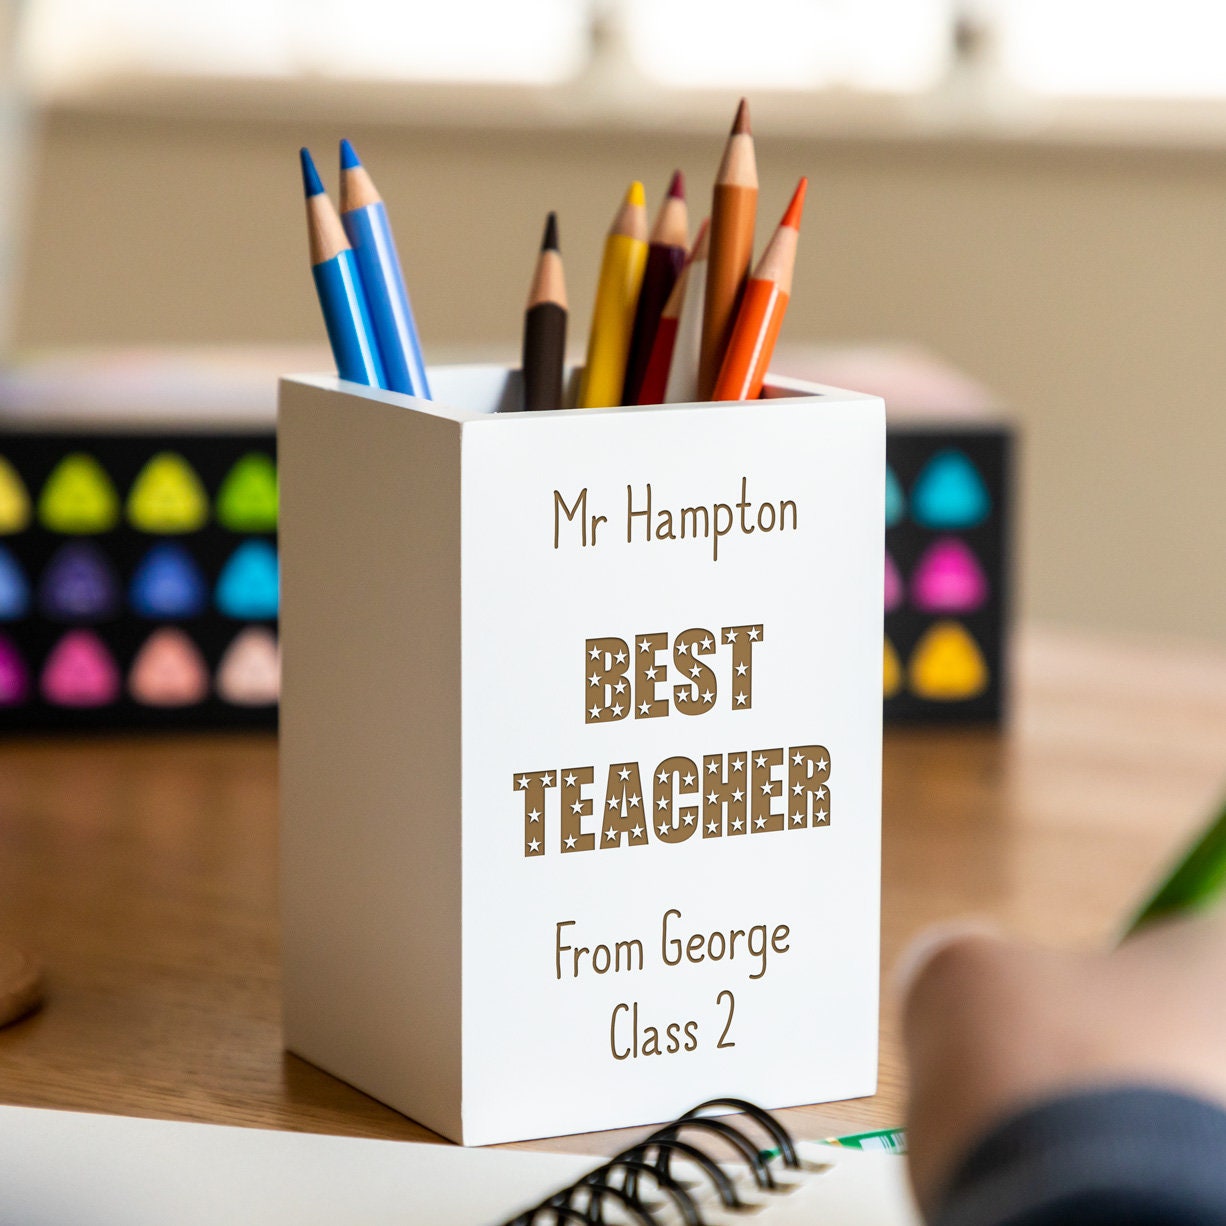 The 20 Best Teacher Pens You'll Reach For Over and Over Again  Best teacher,  Teacher supplies organization, Teacher supplies